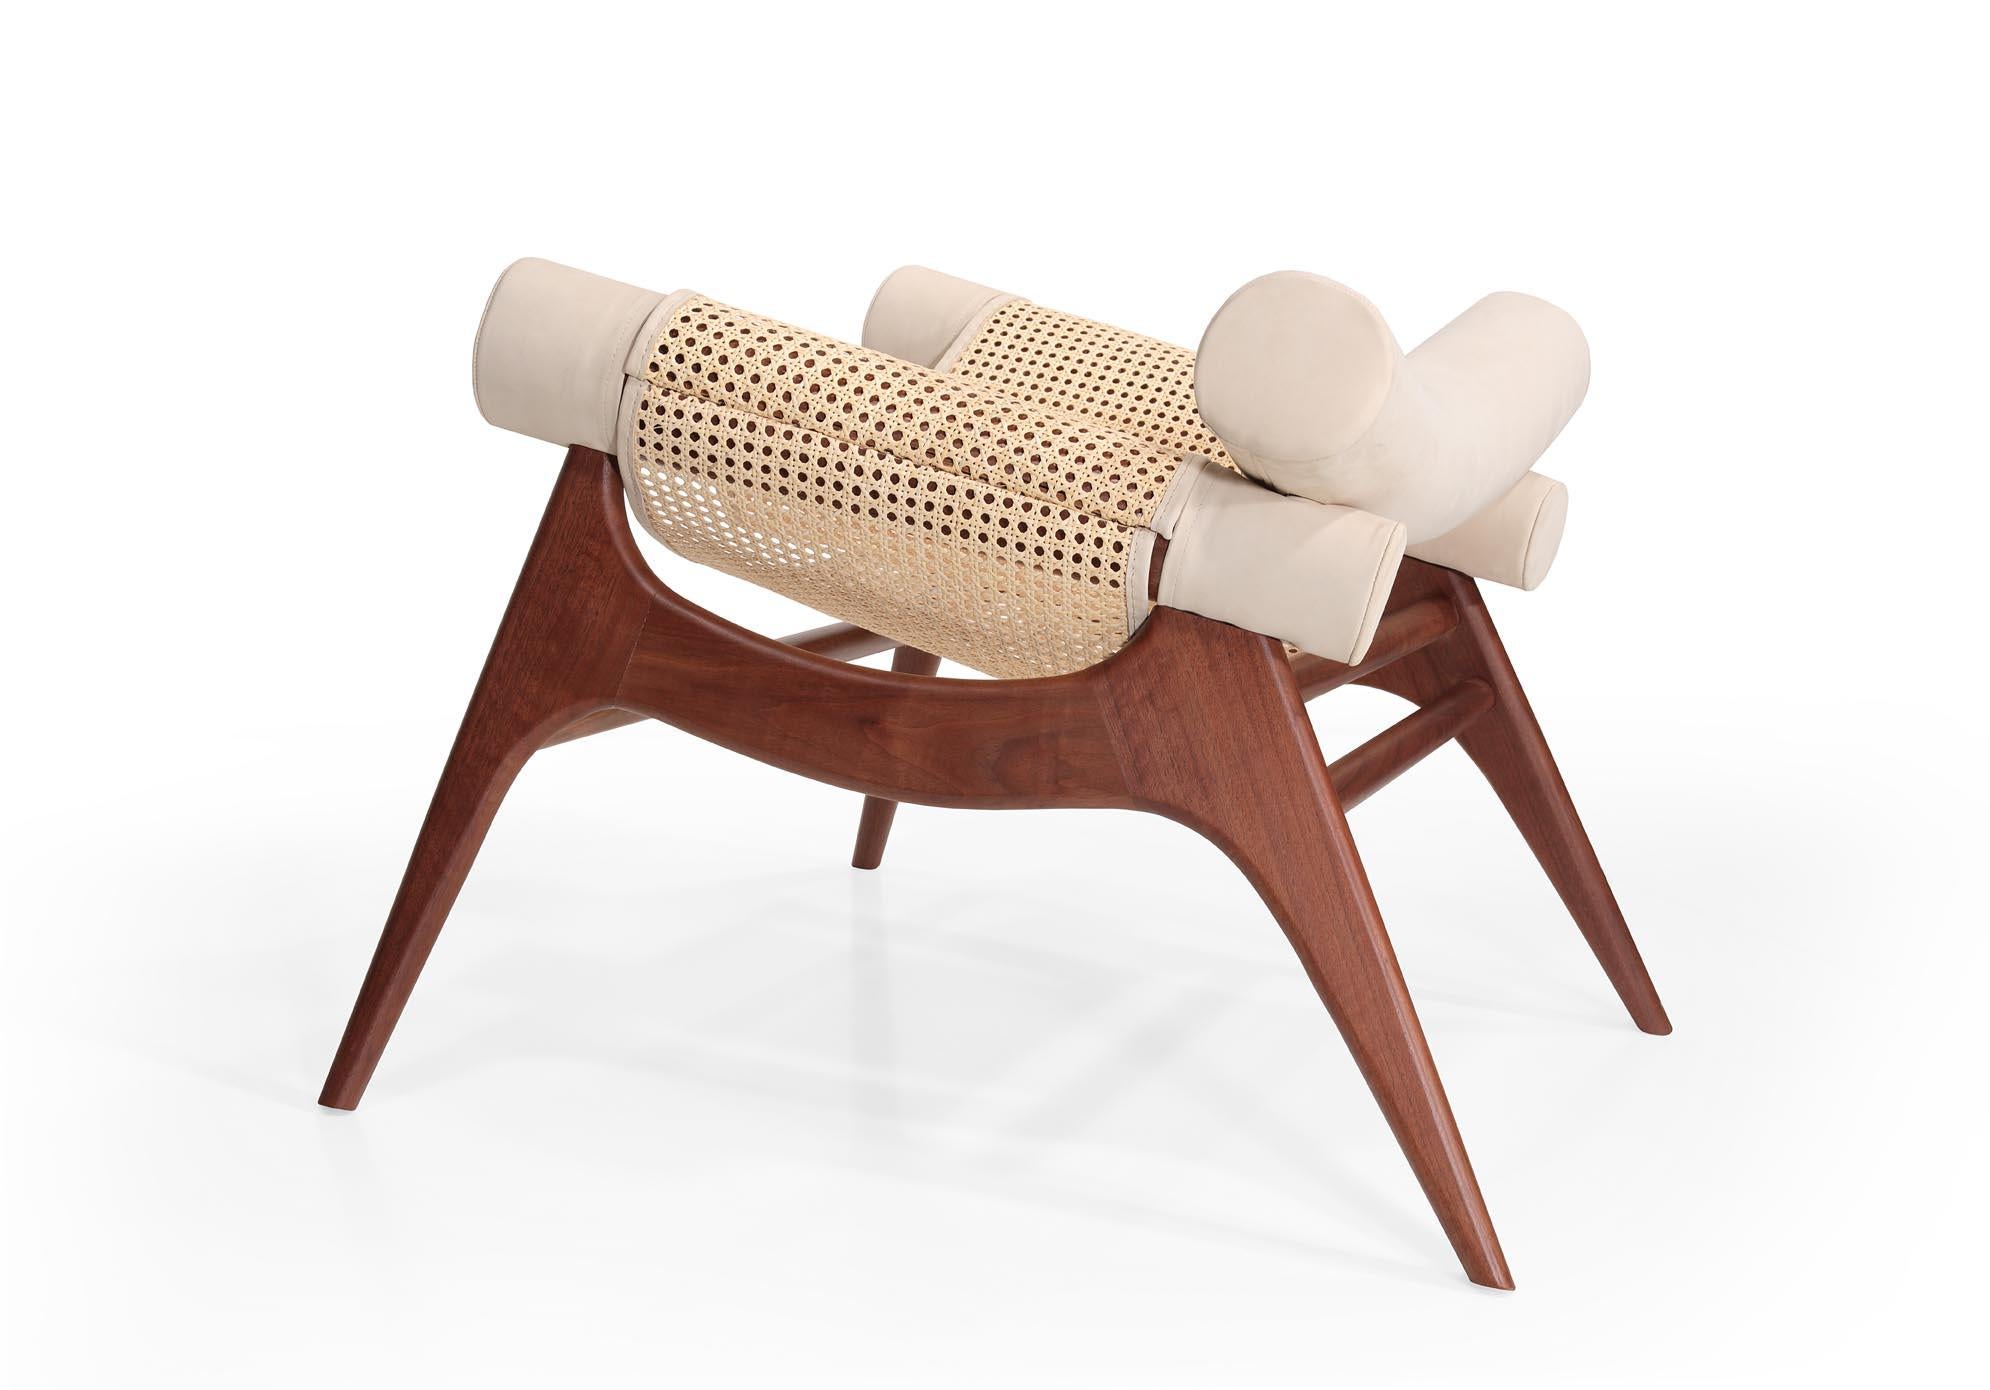 Portuguese Wonatti Espiunca Armchair, Walnut Wood Armchair, Leather Armchair, Rattan Chair For Sale